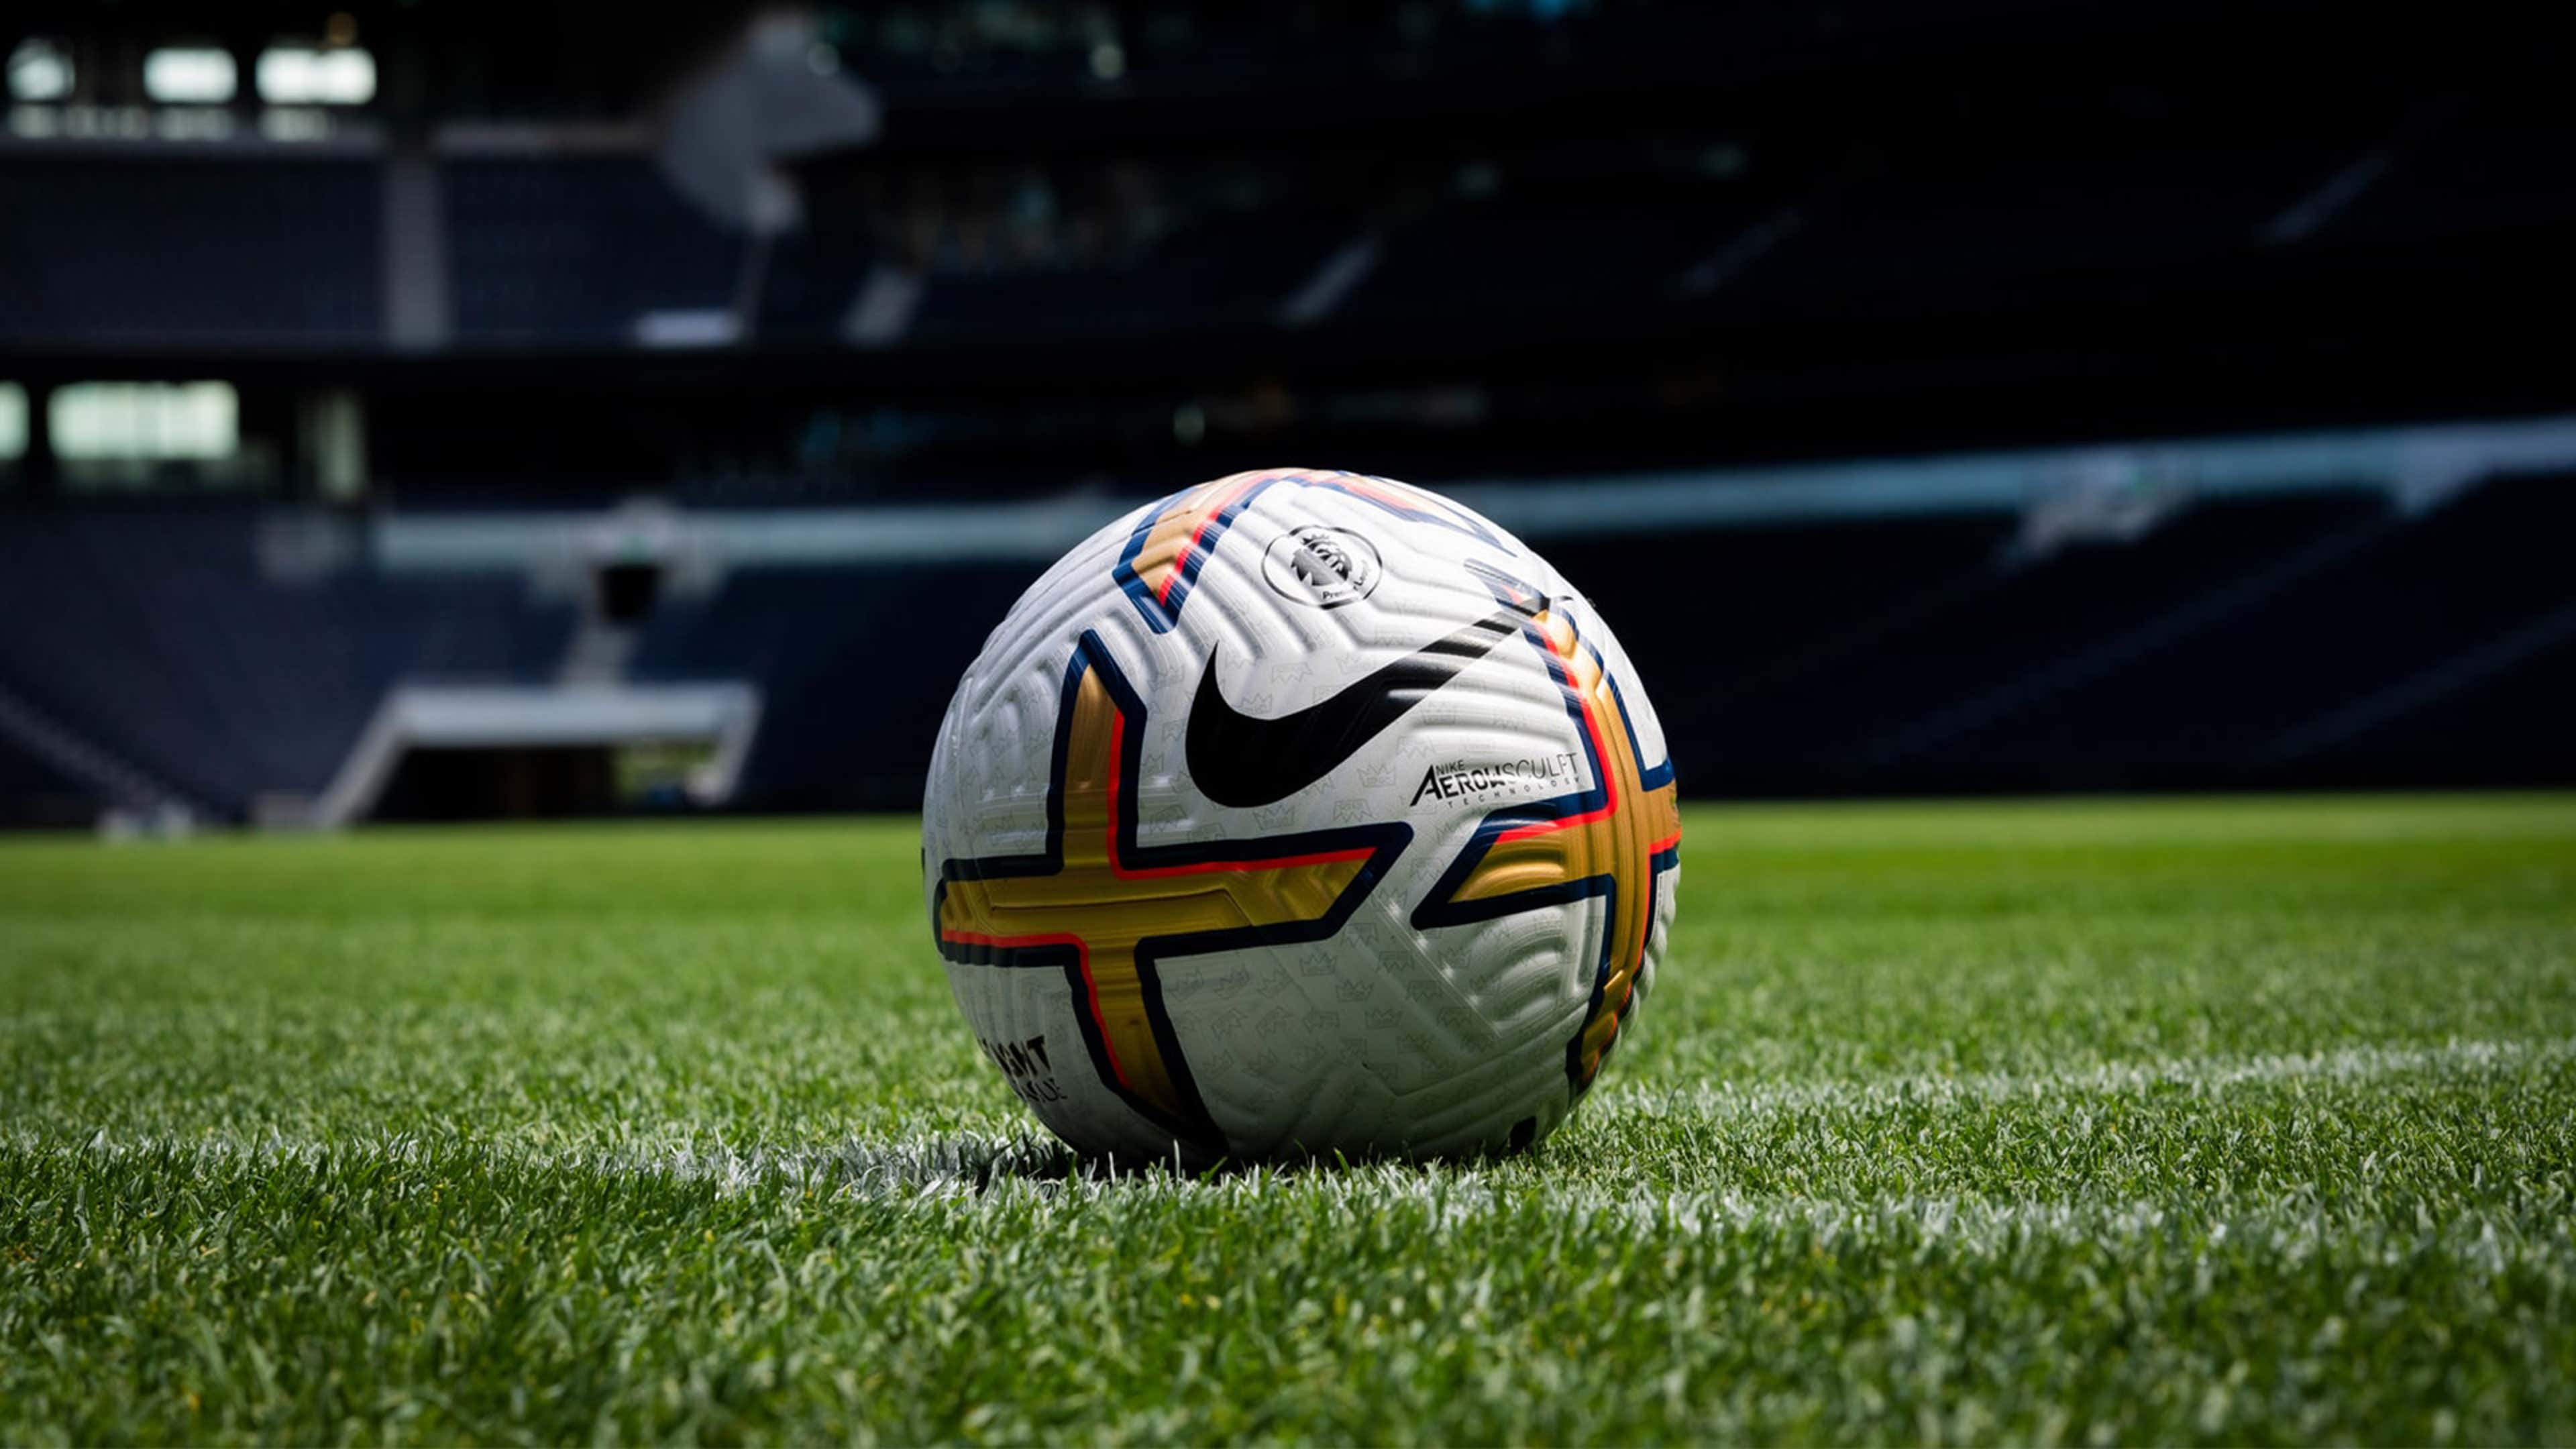 Ballon de Football PSG 2023 - Balles de Sport